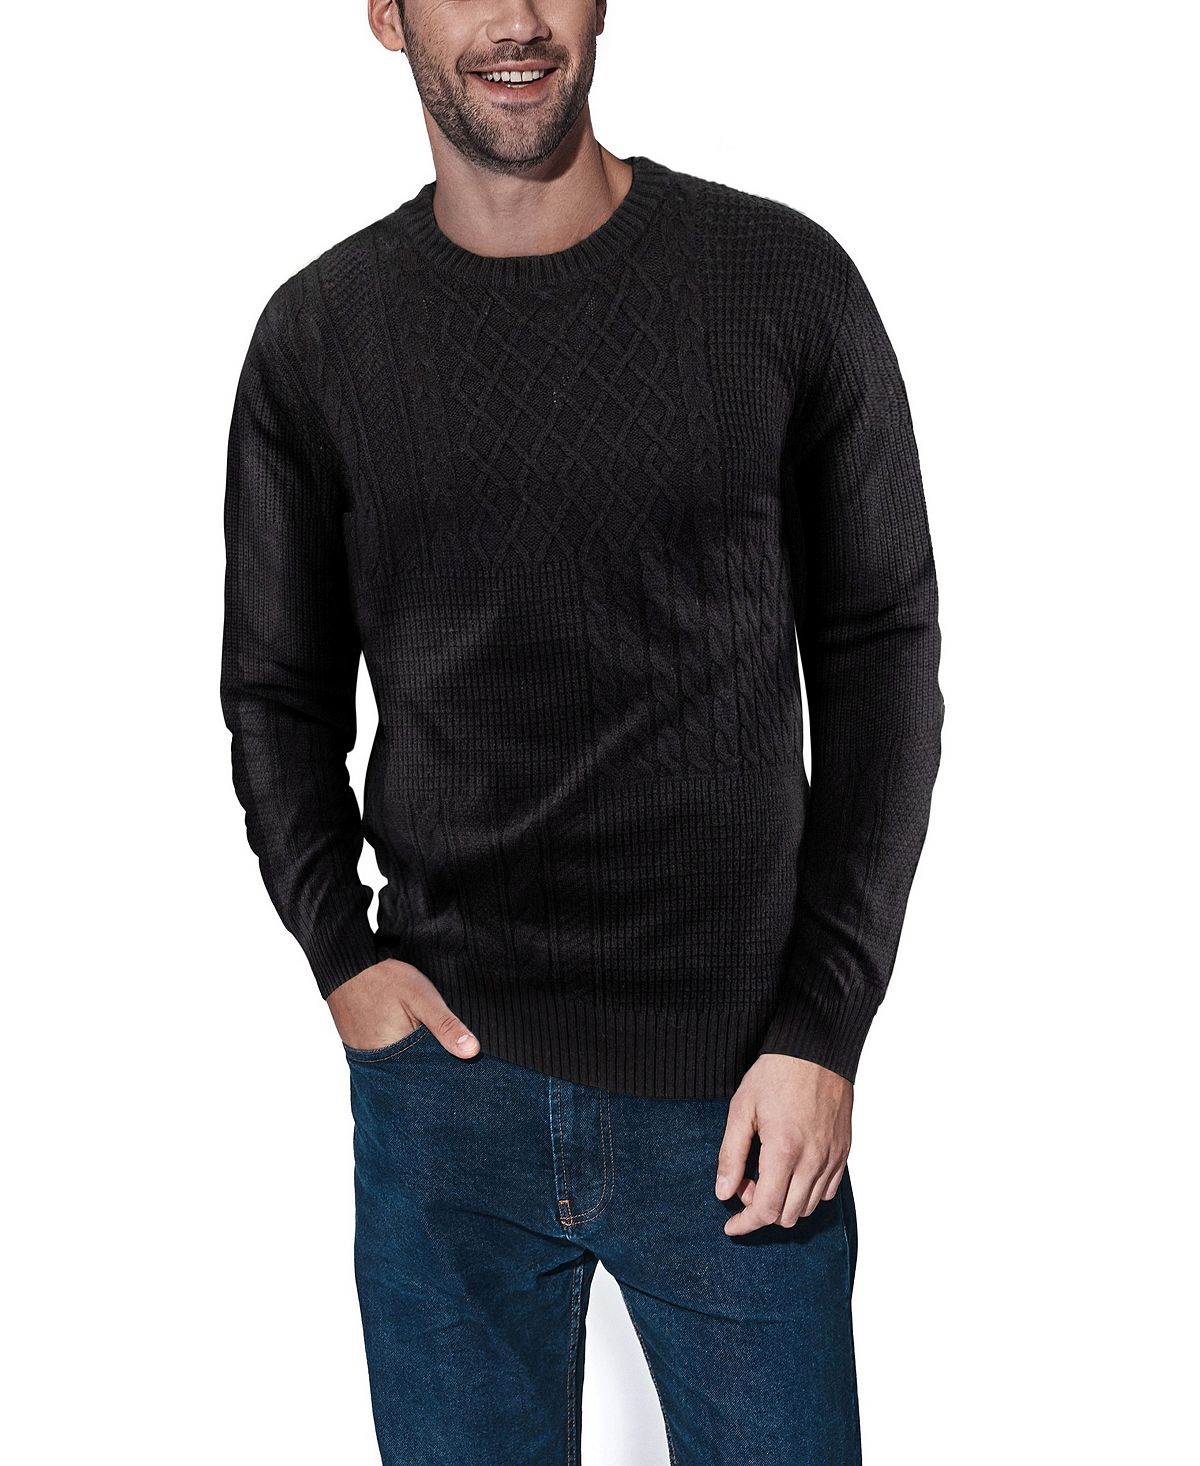 Мужской свитер с круглым вырезом смешанной текстуры X-Ray, черный пуловер laredoute пуловер с круглым вырезом m l синий